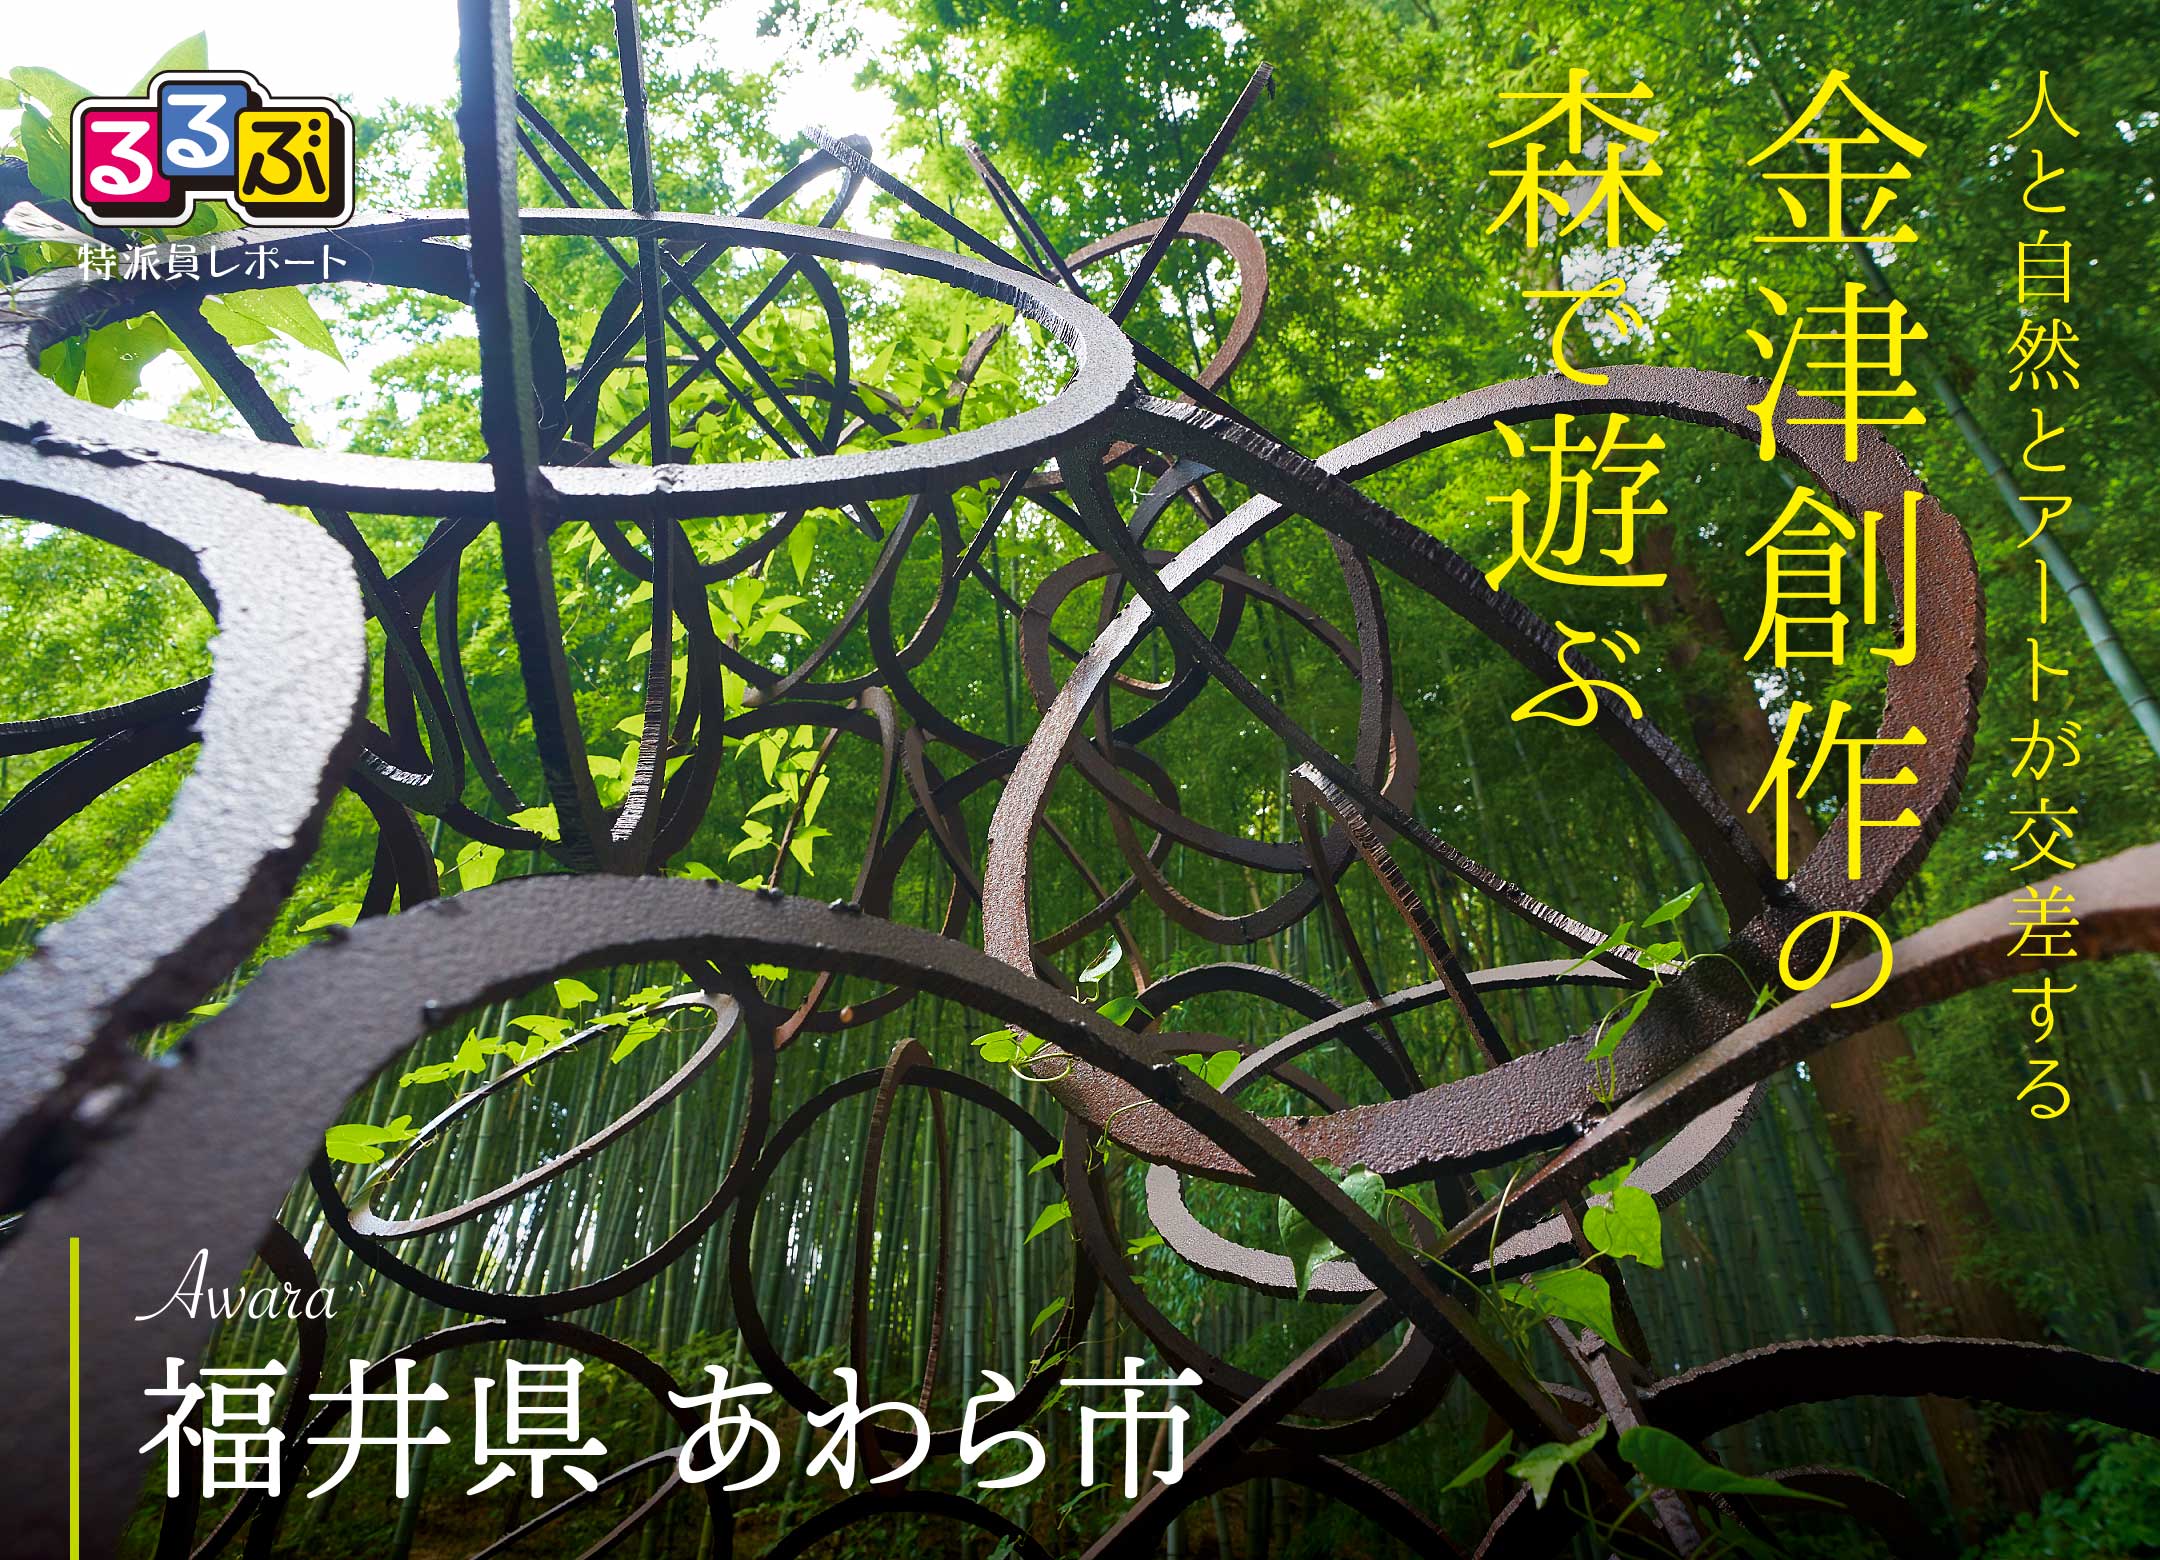 金津創作の森で遊ぶ | 福井県あわら市の旅行レポート